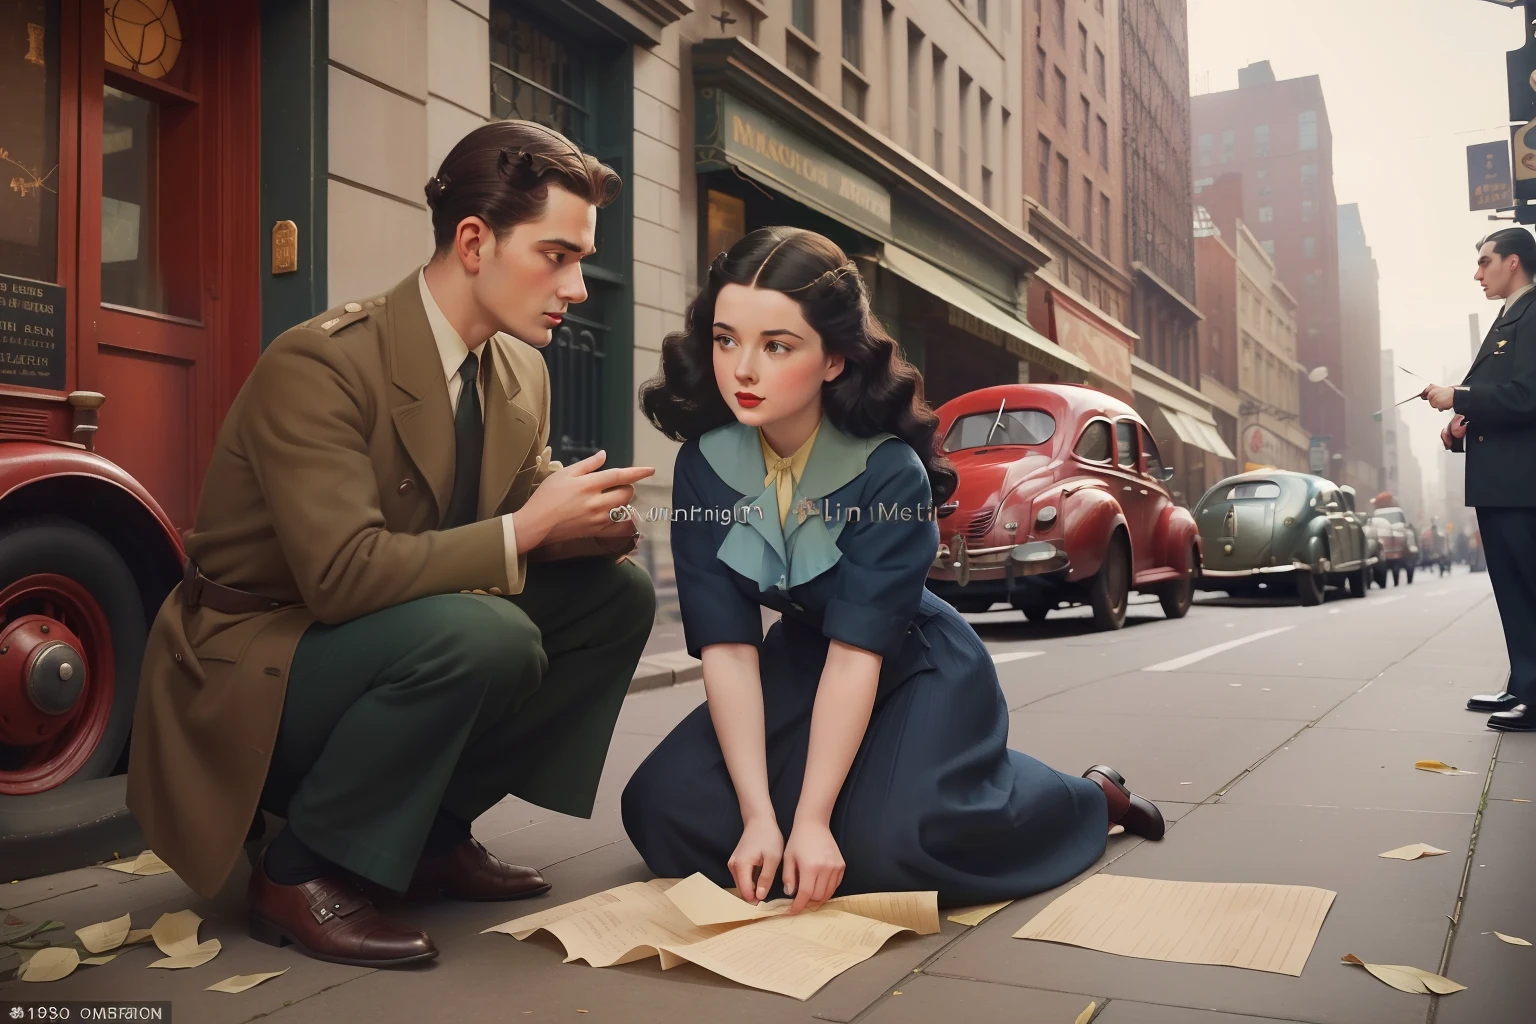 ปี: 1946. ที่ตั้ง: นิวยอร์ก. ฉากก่อนราฟาเอลกับผู้หญิงผมดำคุกเข่าอยู่บนถนนเพื่อหยิบกระดาษที่ตกหล่น, ผู้ชายที่ช่วยเธอ ((เสื้อผ้าปี 1940)) ((ทรงผมปี 1940)) ((ในรูปแบบของ "OMITB")) ((สไตล์ภาพยนตร์))